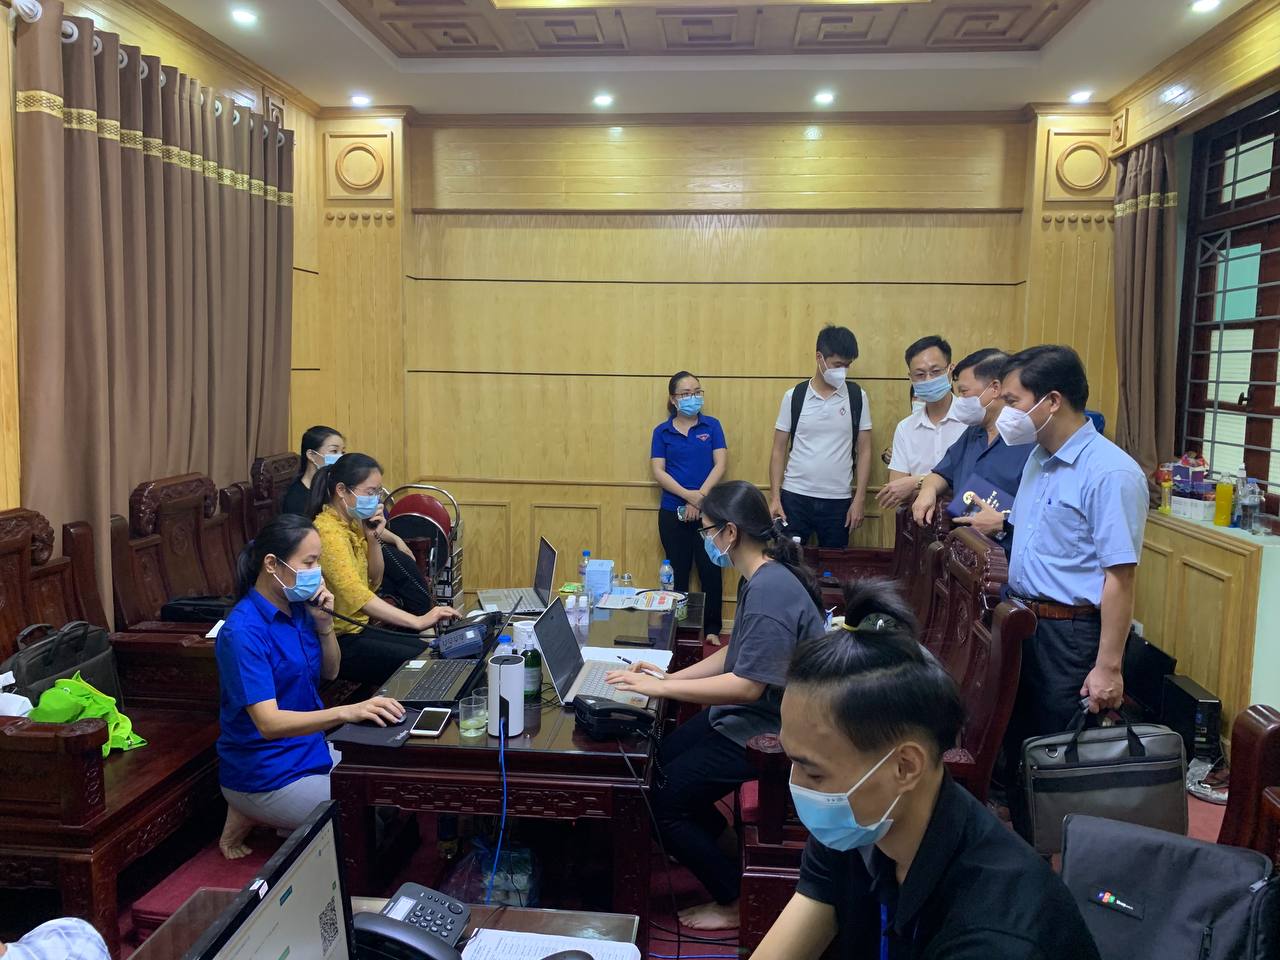 Bộ Y Tế Triển Khai Thử Nghiệm Tổng Đài Ảo Của Sao Bac Dau Telecom Tại Tỉnh Bắc Ninh